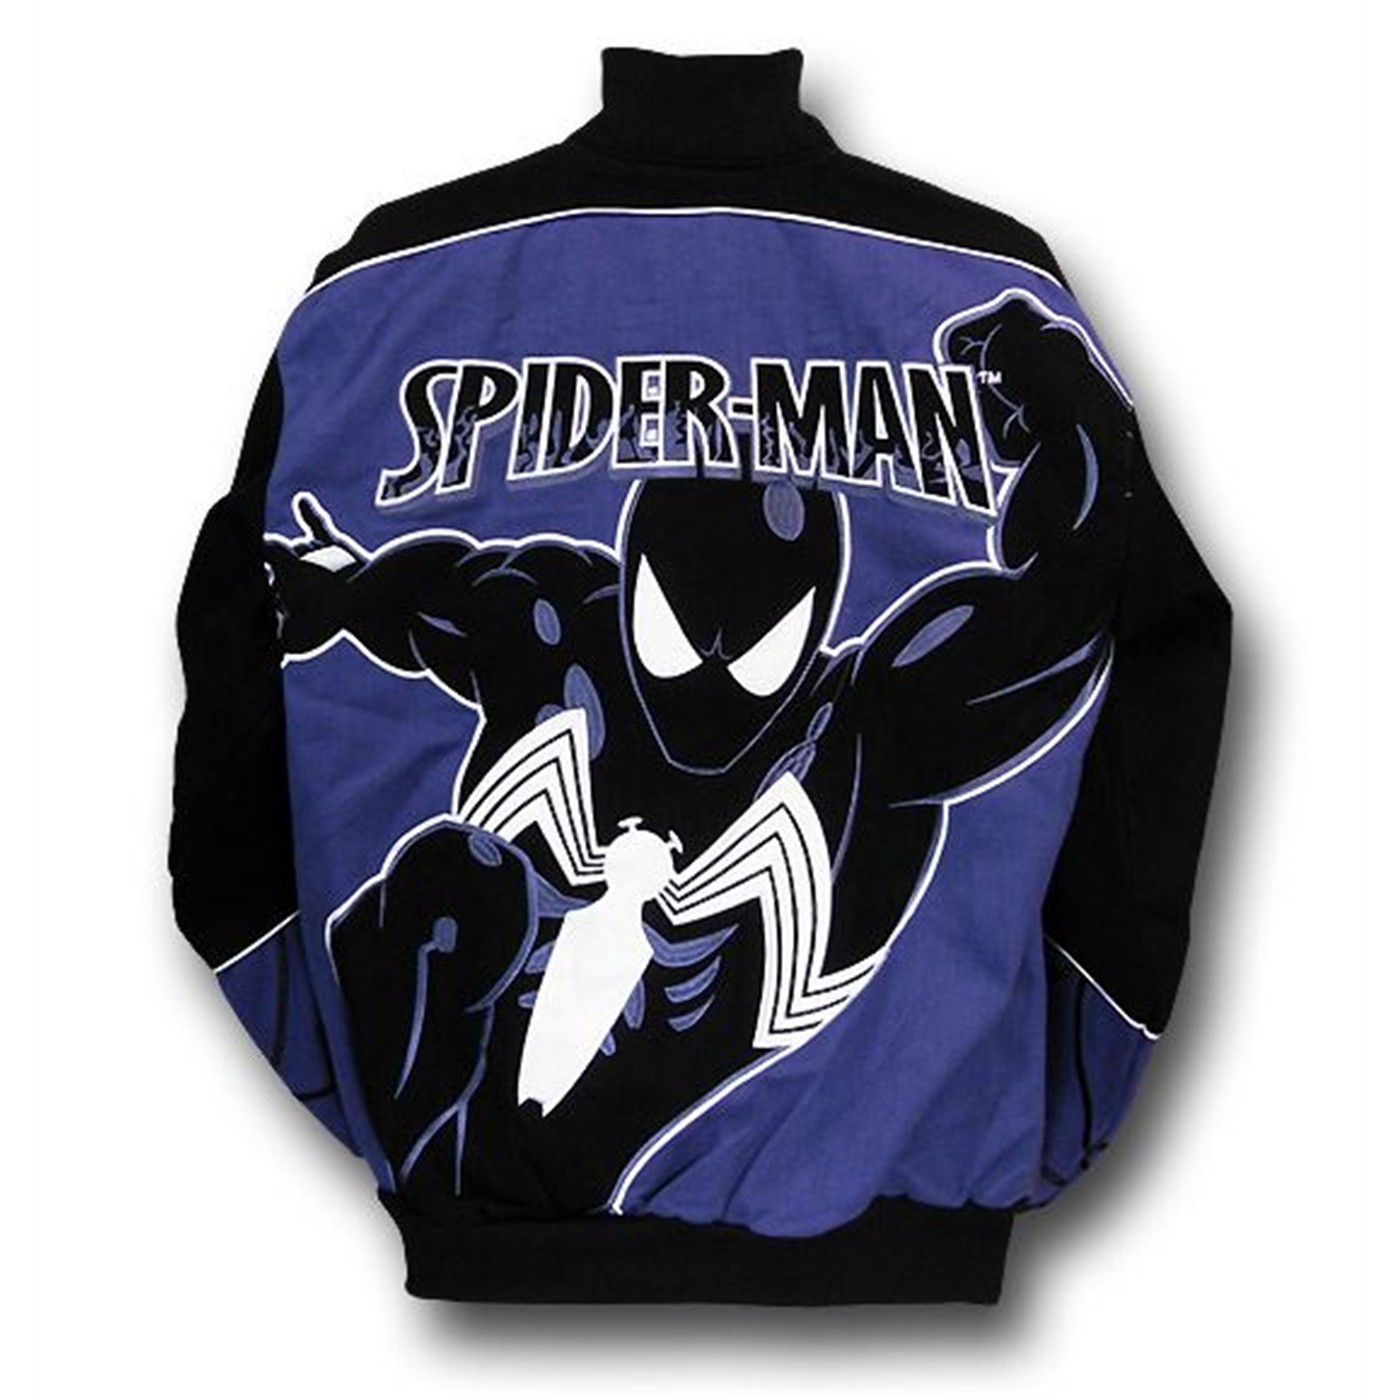 Spiderman Black Suit Twill Jacket